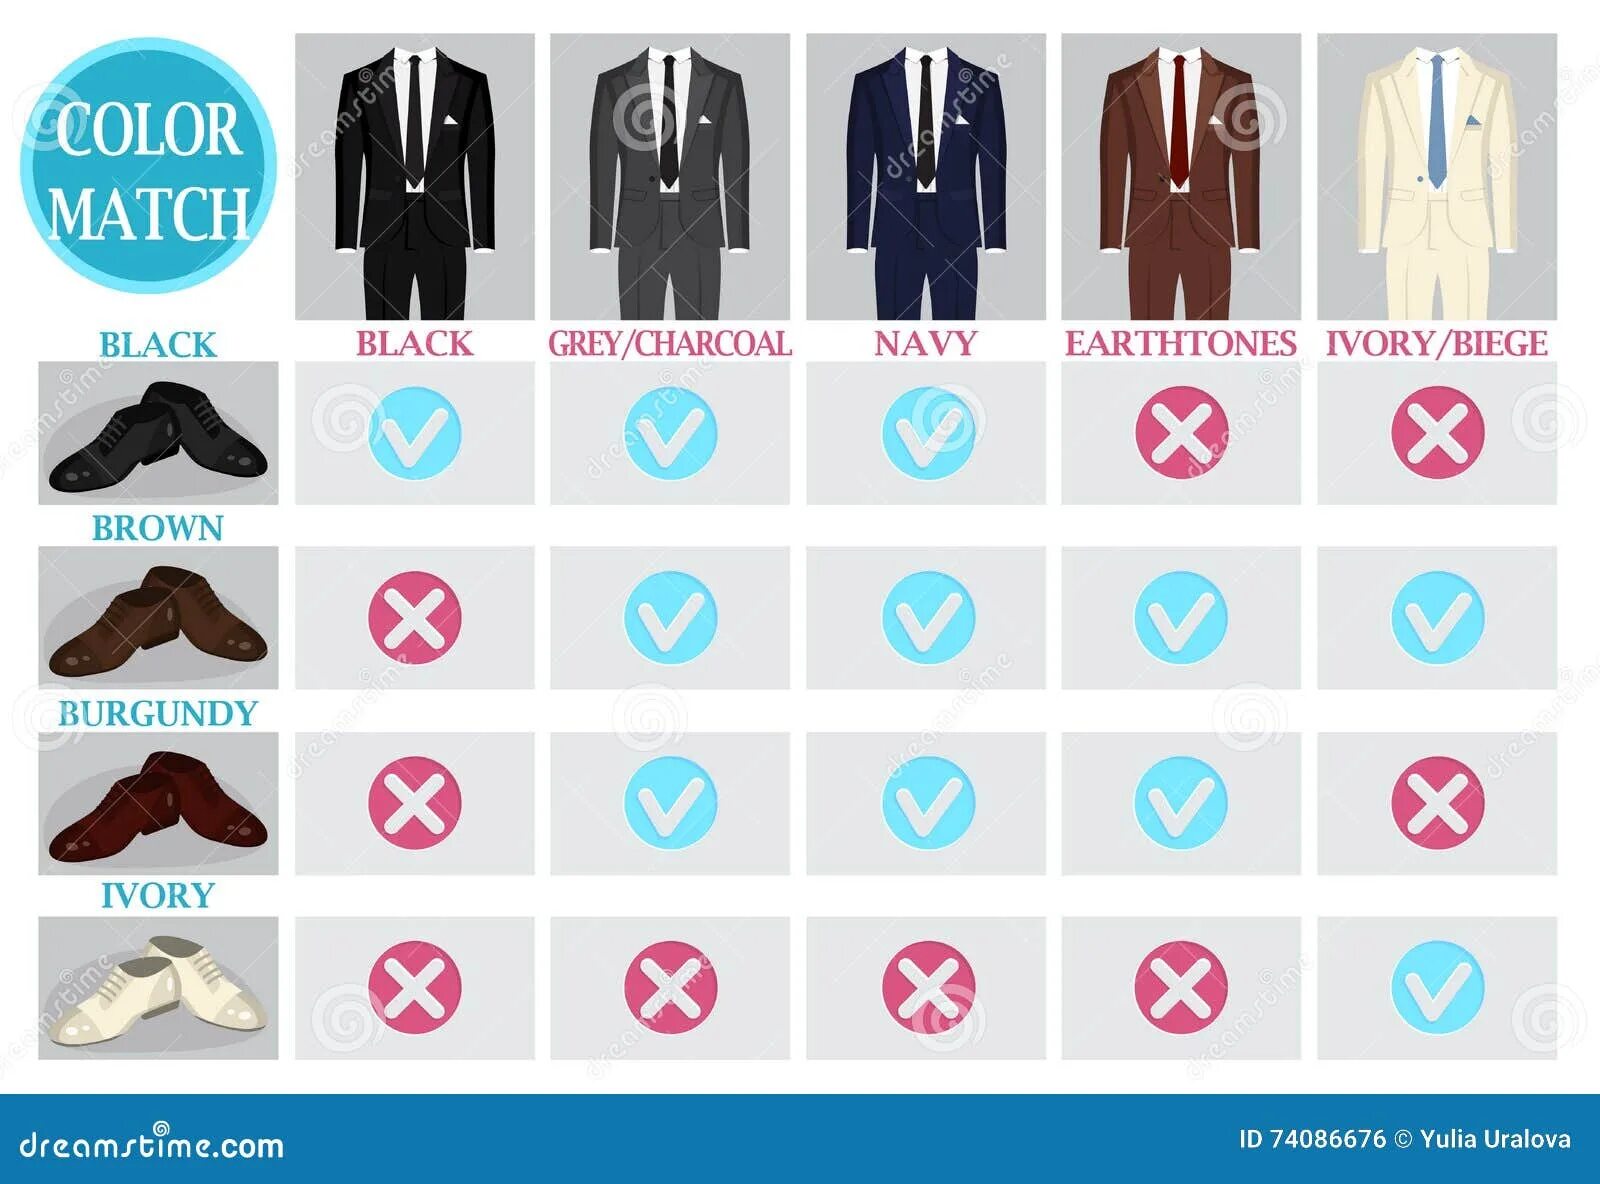 Вектор костюм цвета. Палитра дресс кода. Палитра дресс кода на свадьбу. Инфографика для мужских курток.